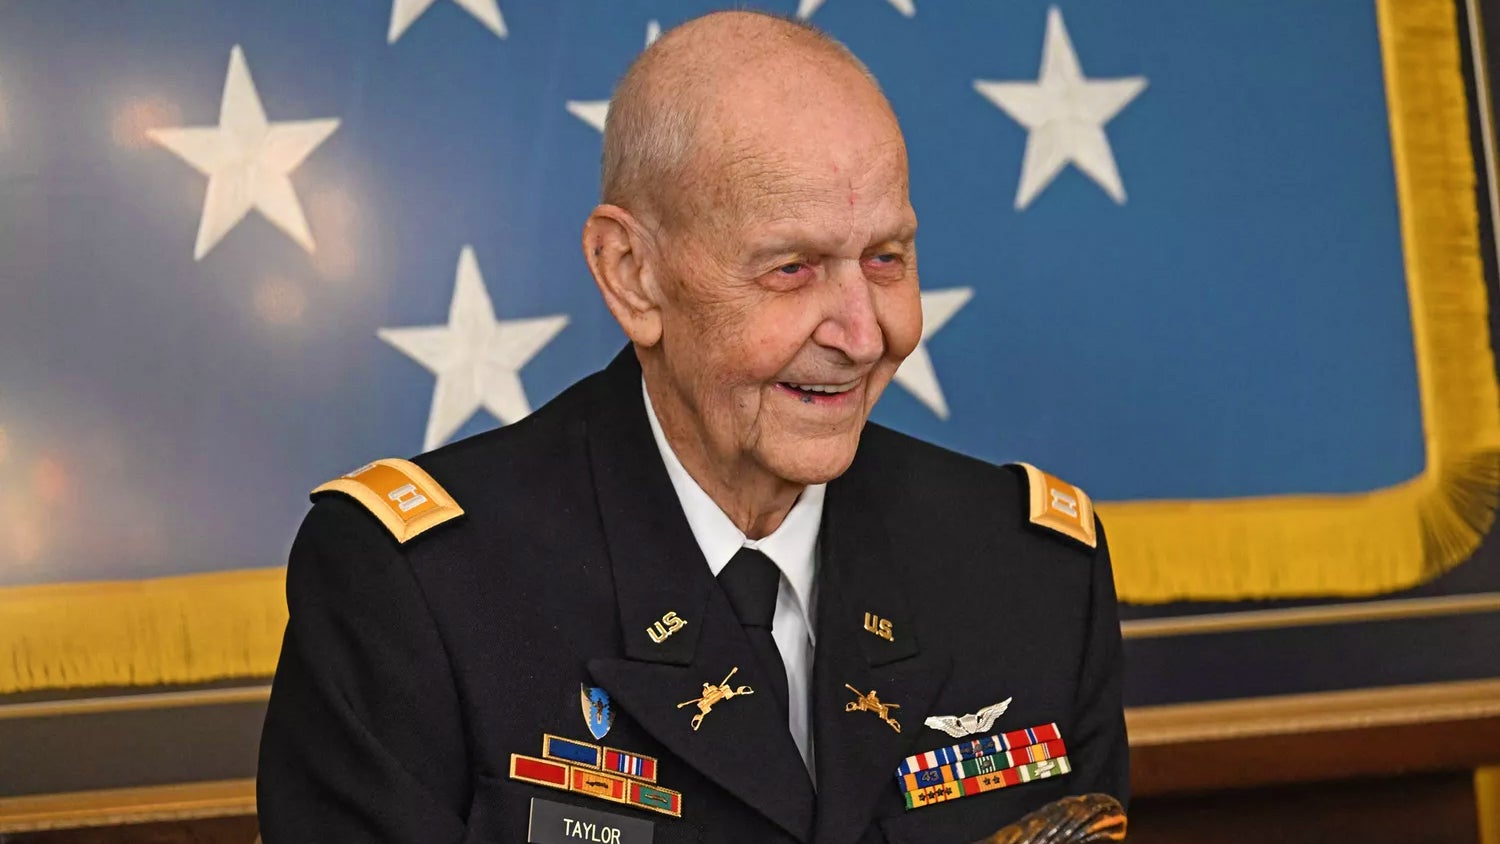 Former Capt. Larry Taylor